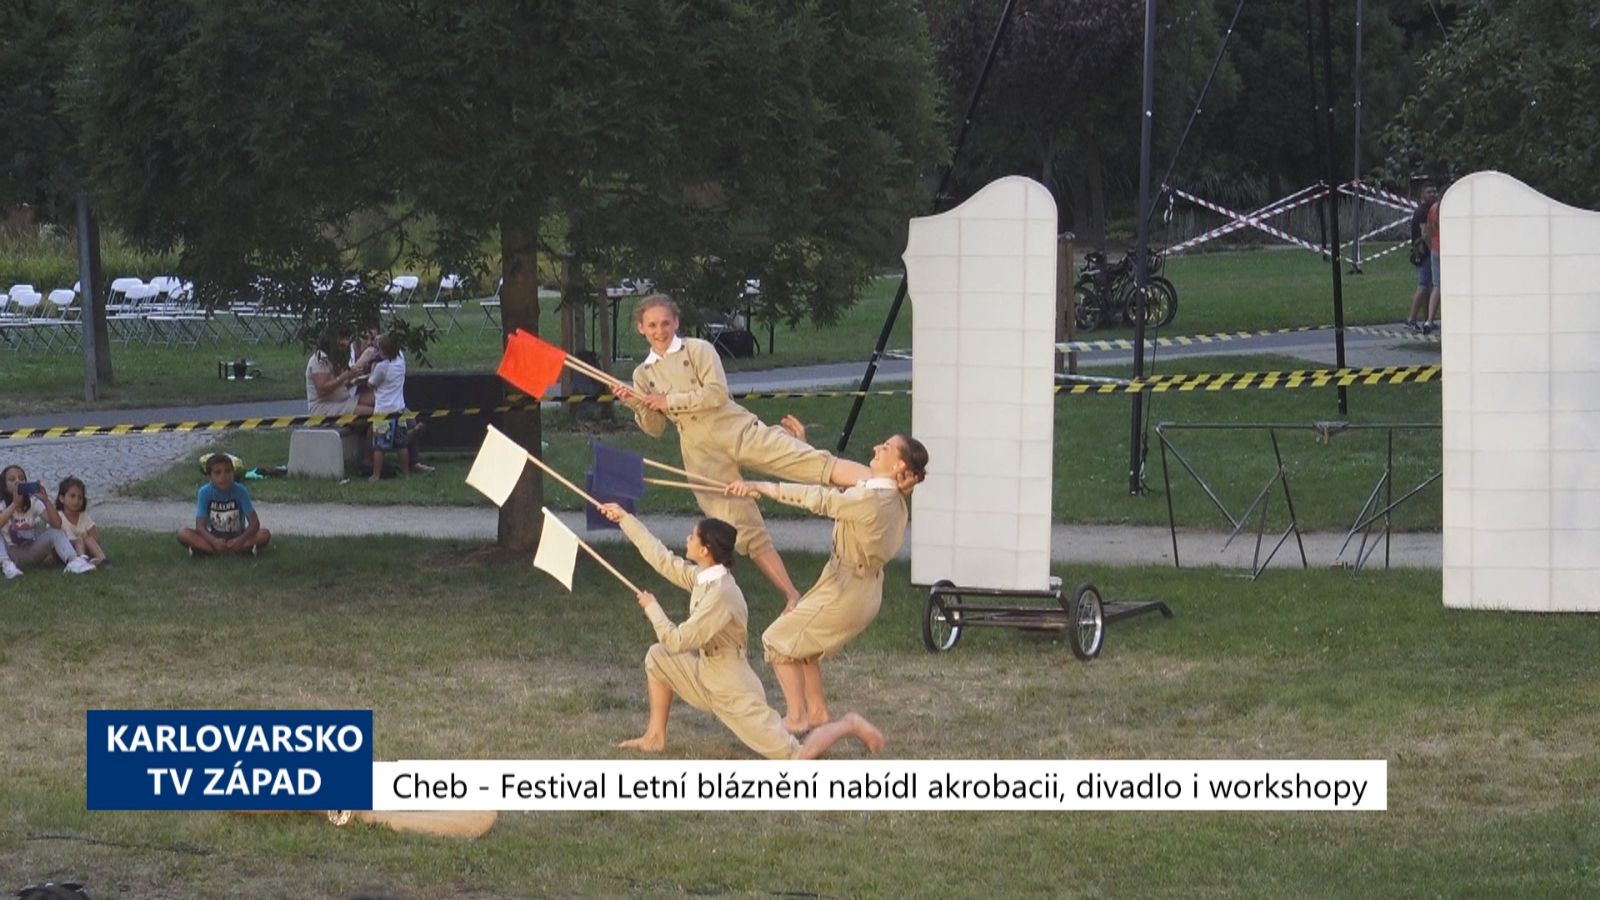 Cheb: Festival Letní bláznění nabídl akrobacii, divadlo i workshopy (TV Západ)